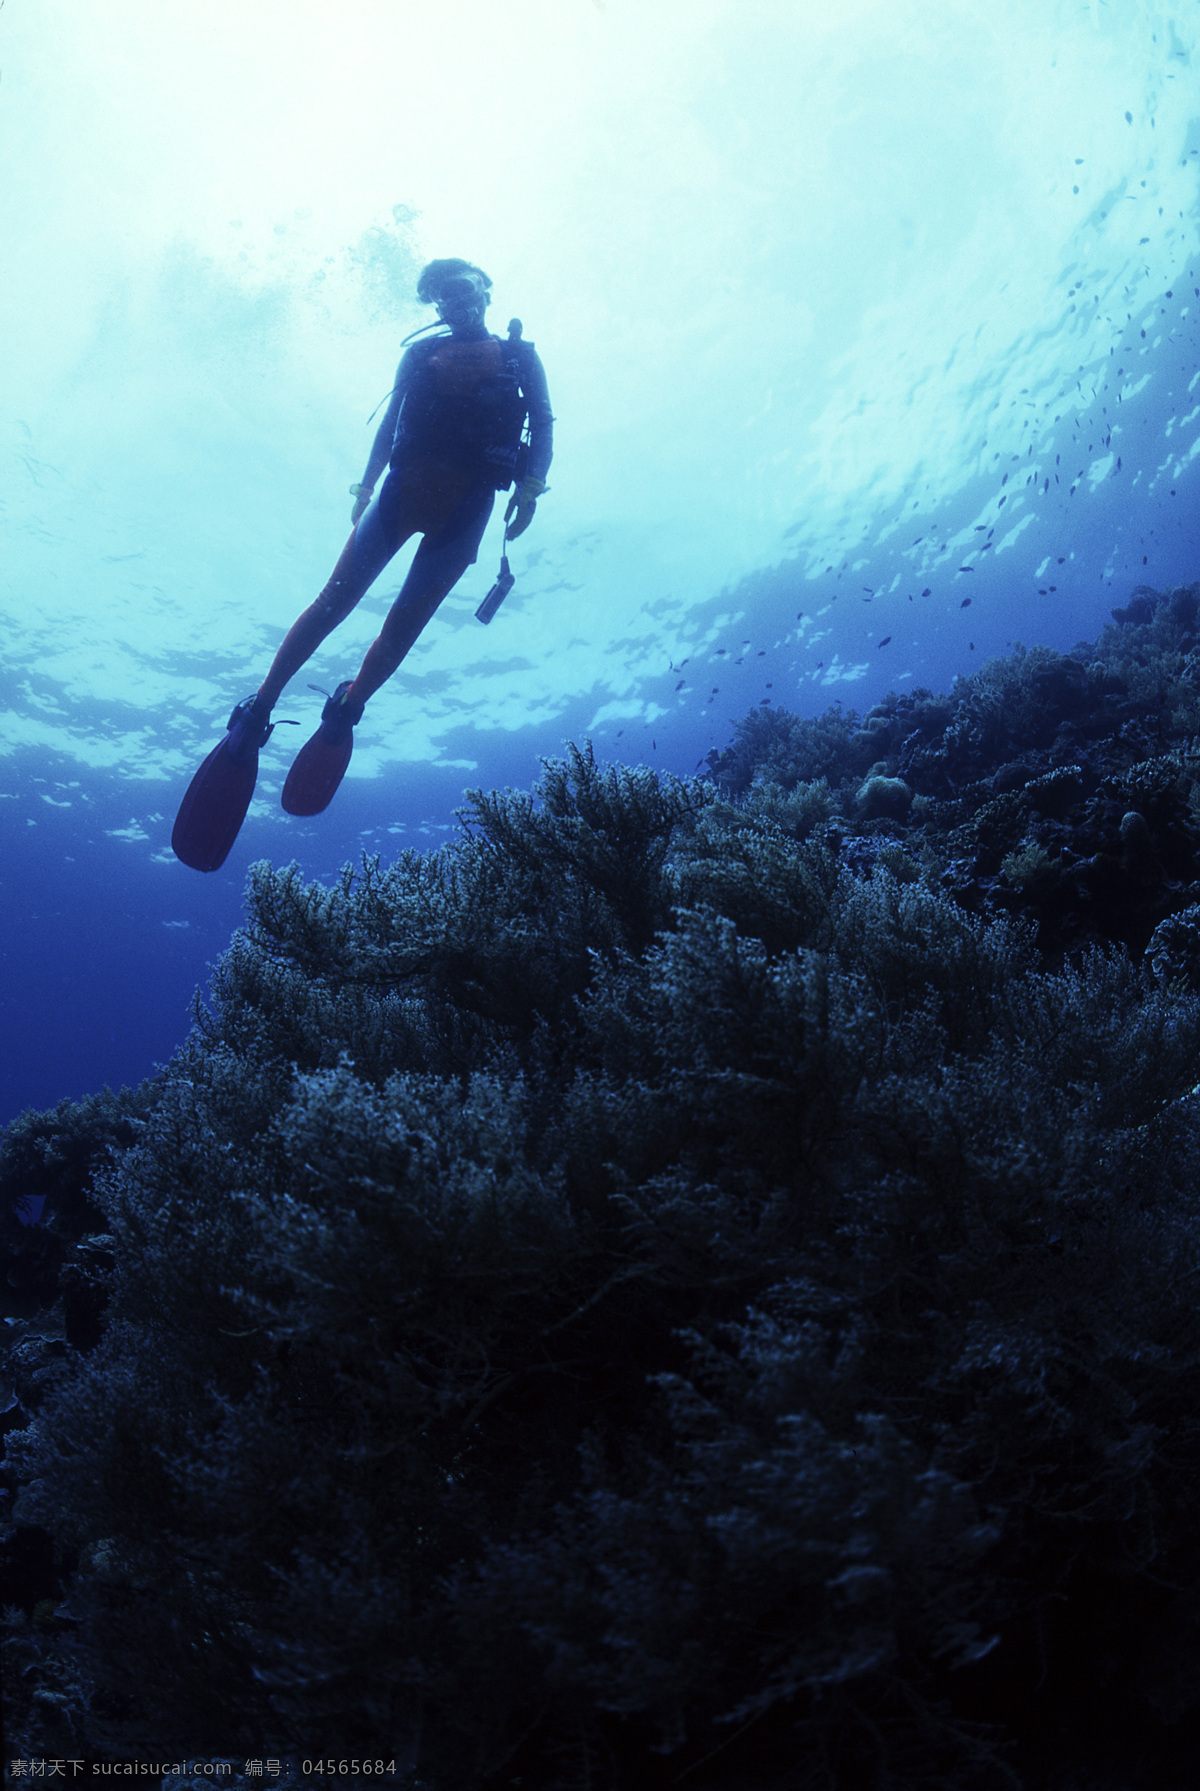 全球 首席 大百科 海底 潜水 潜水员 珊瑚 深海 探索 探秘